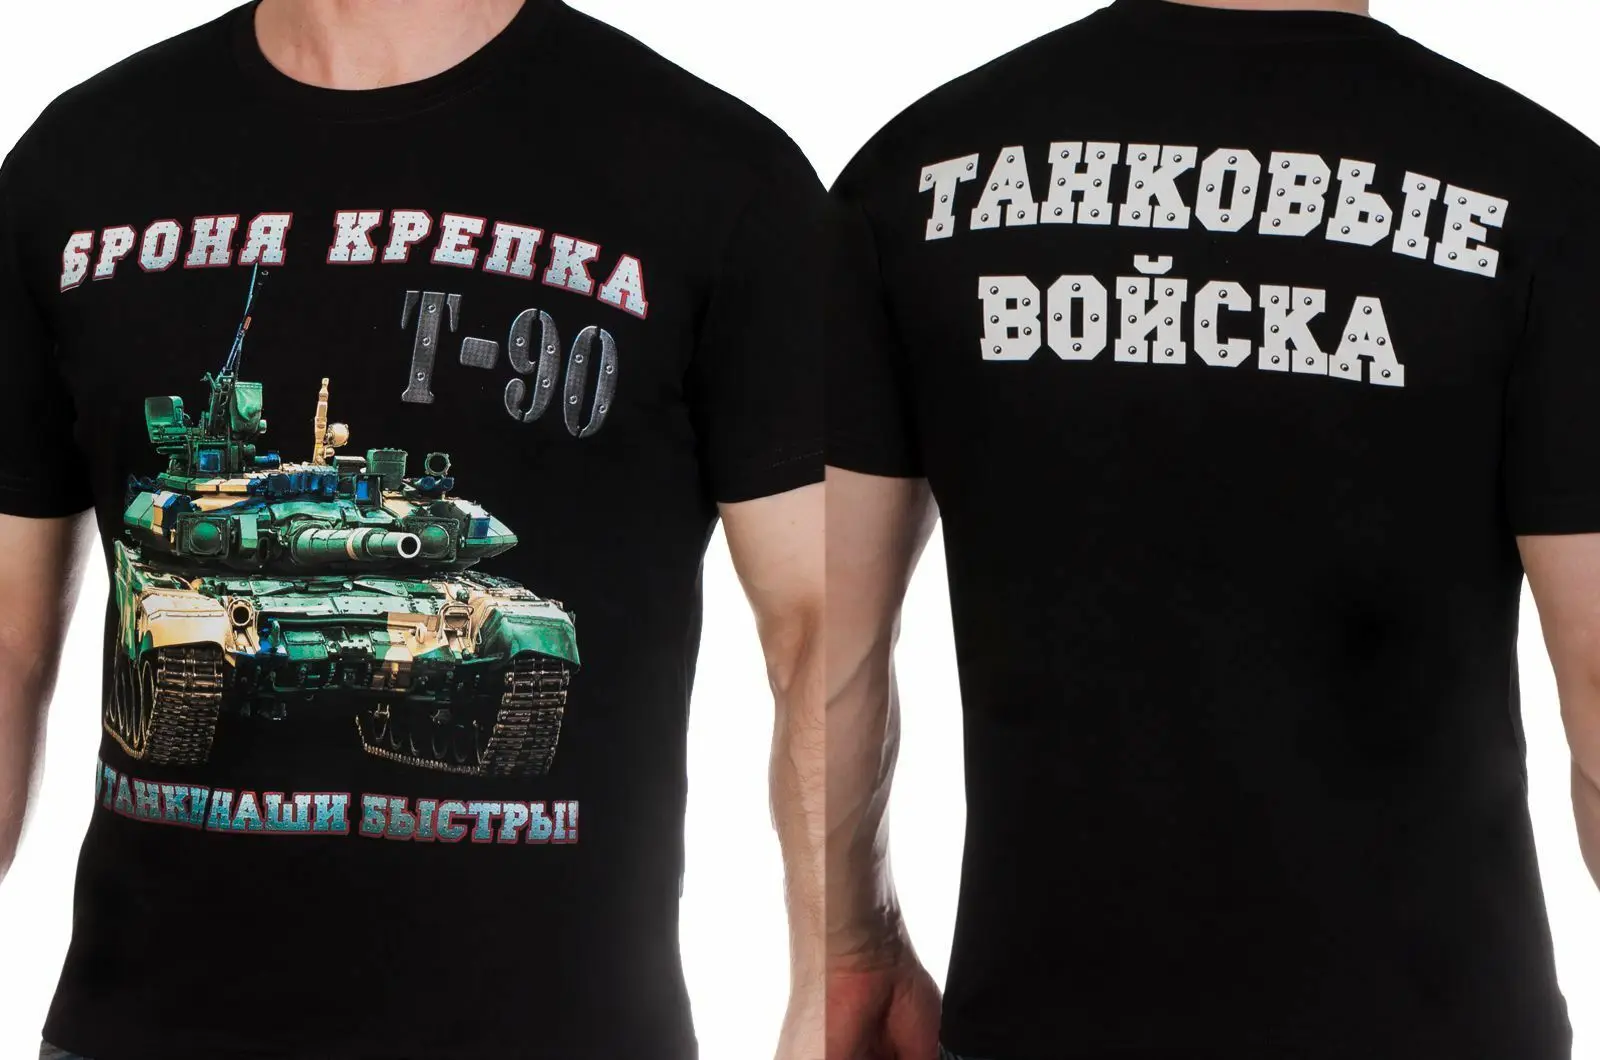 

Российские танковые войска, T-90 главный боевой танк, футболка. Футболки с коротким рукавом из 100% хлопка в повседневном стиле свободного кроя